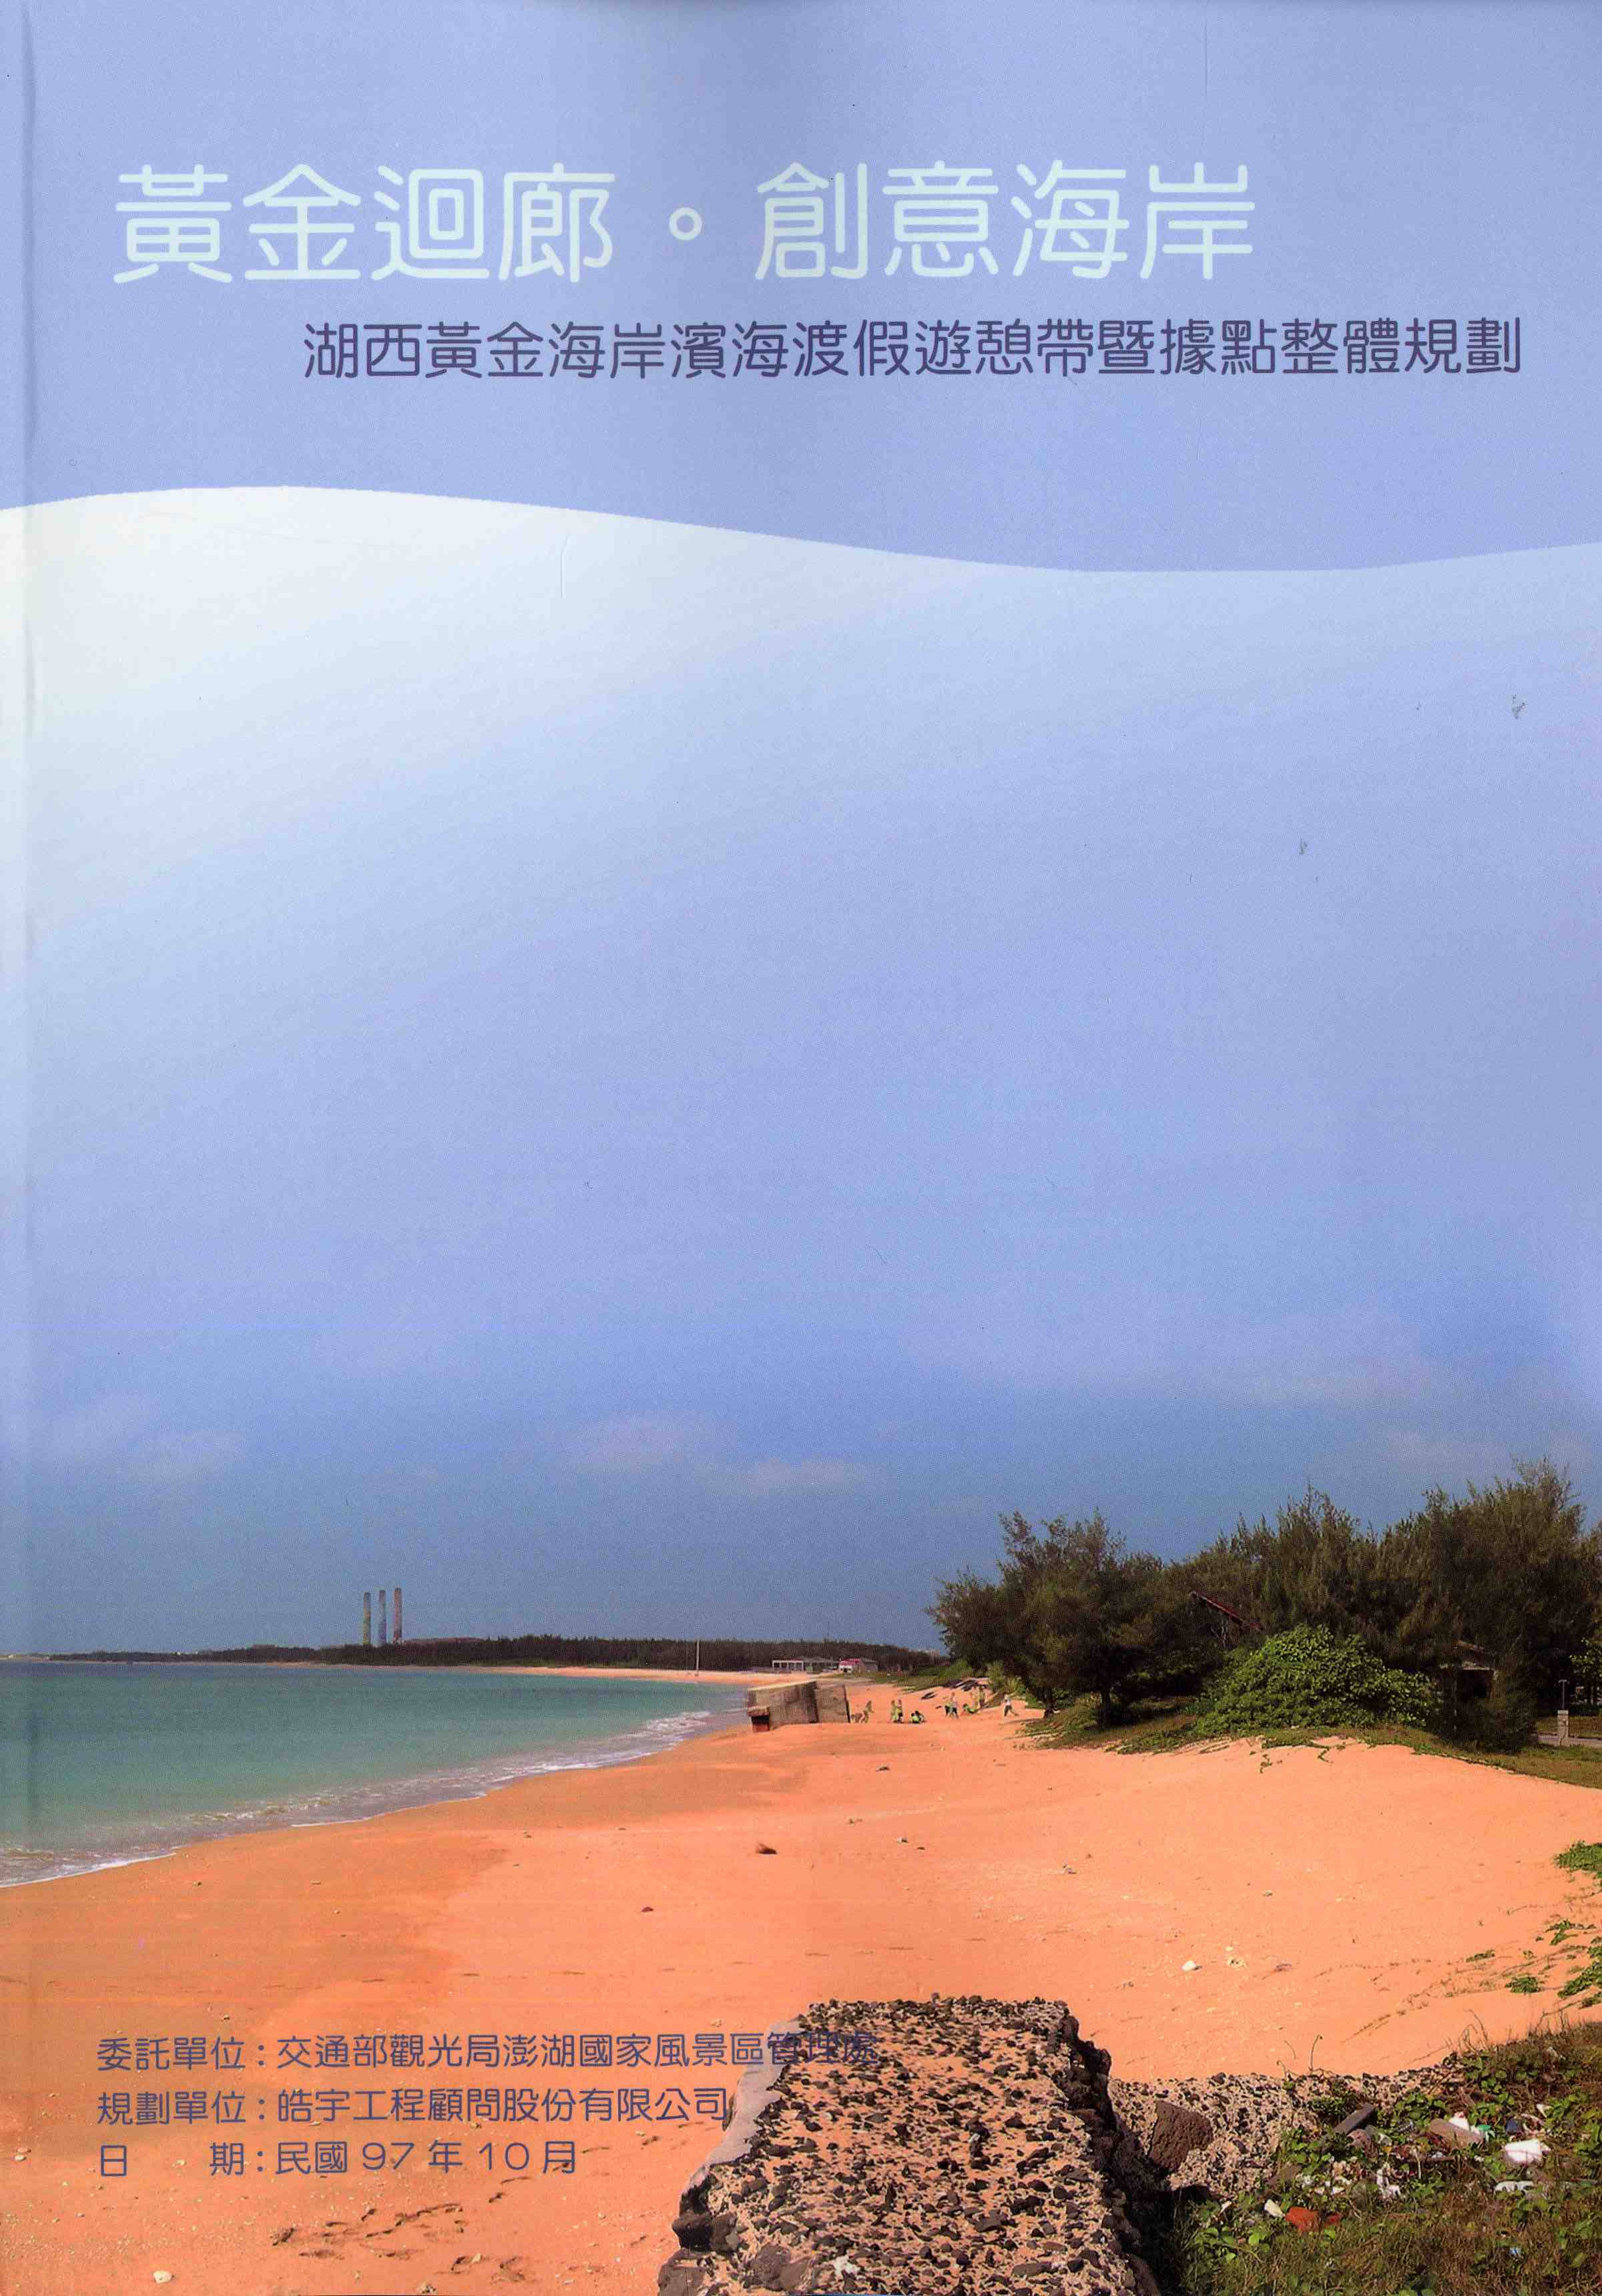 湖西黃金海岸濱海渡假遊憩帶暨據點整體規劃